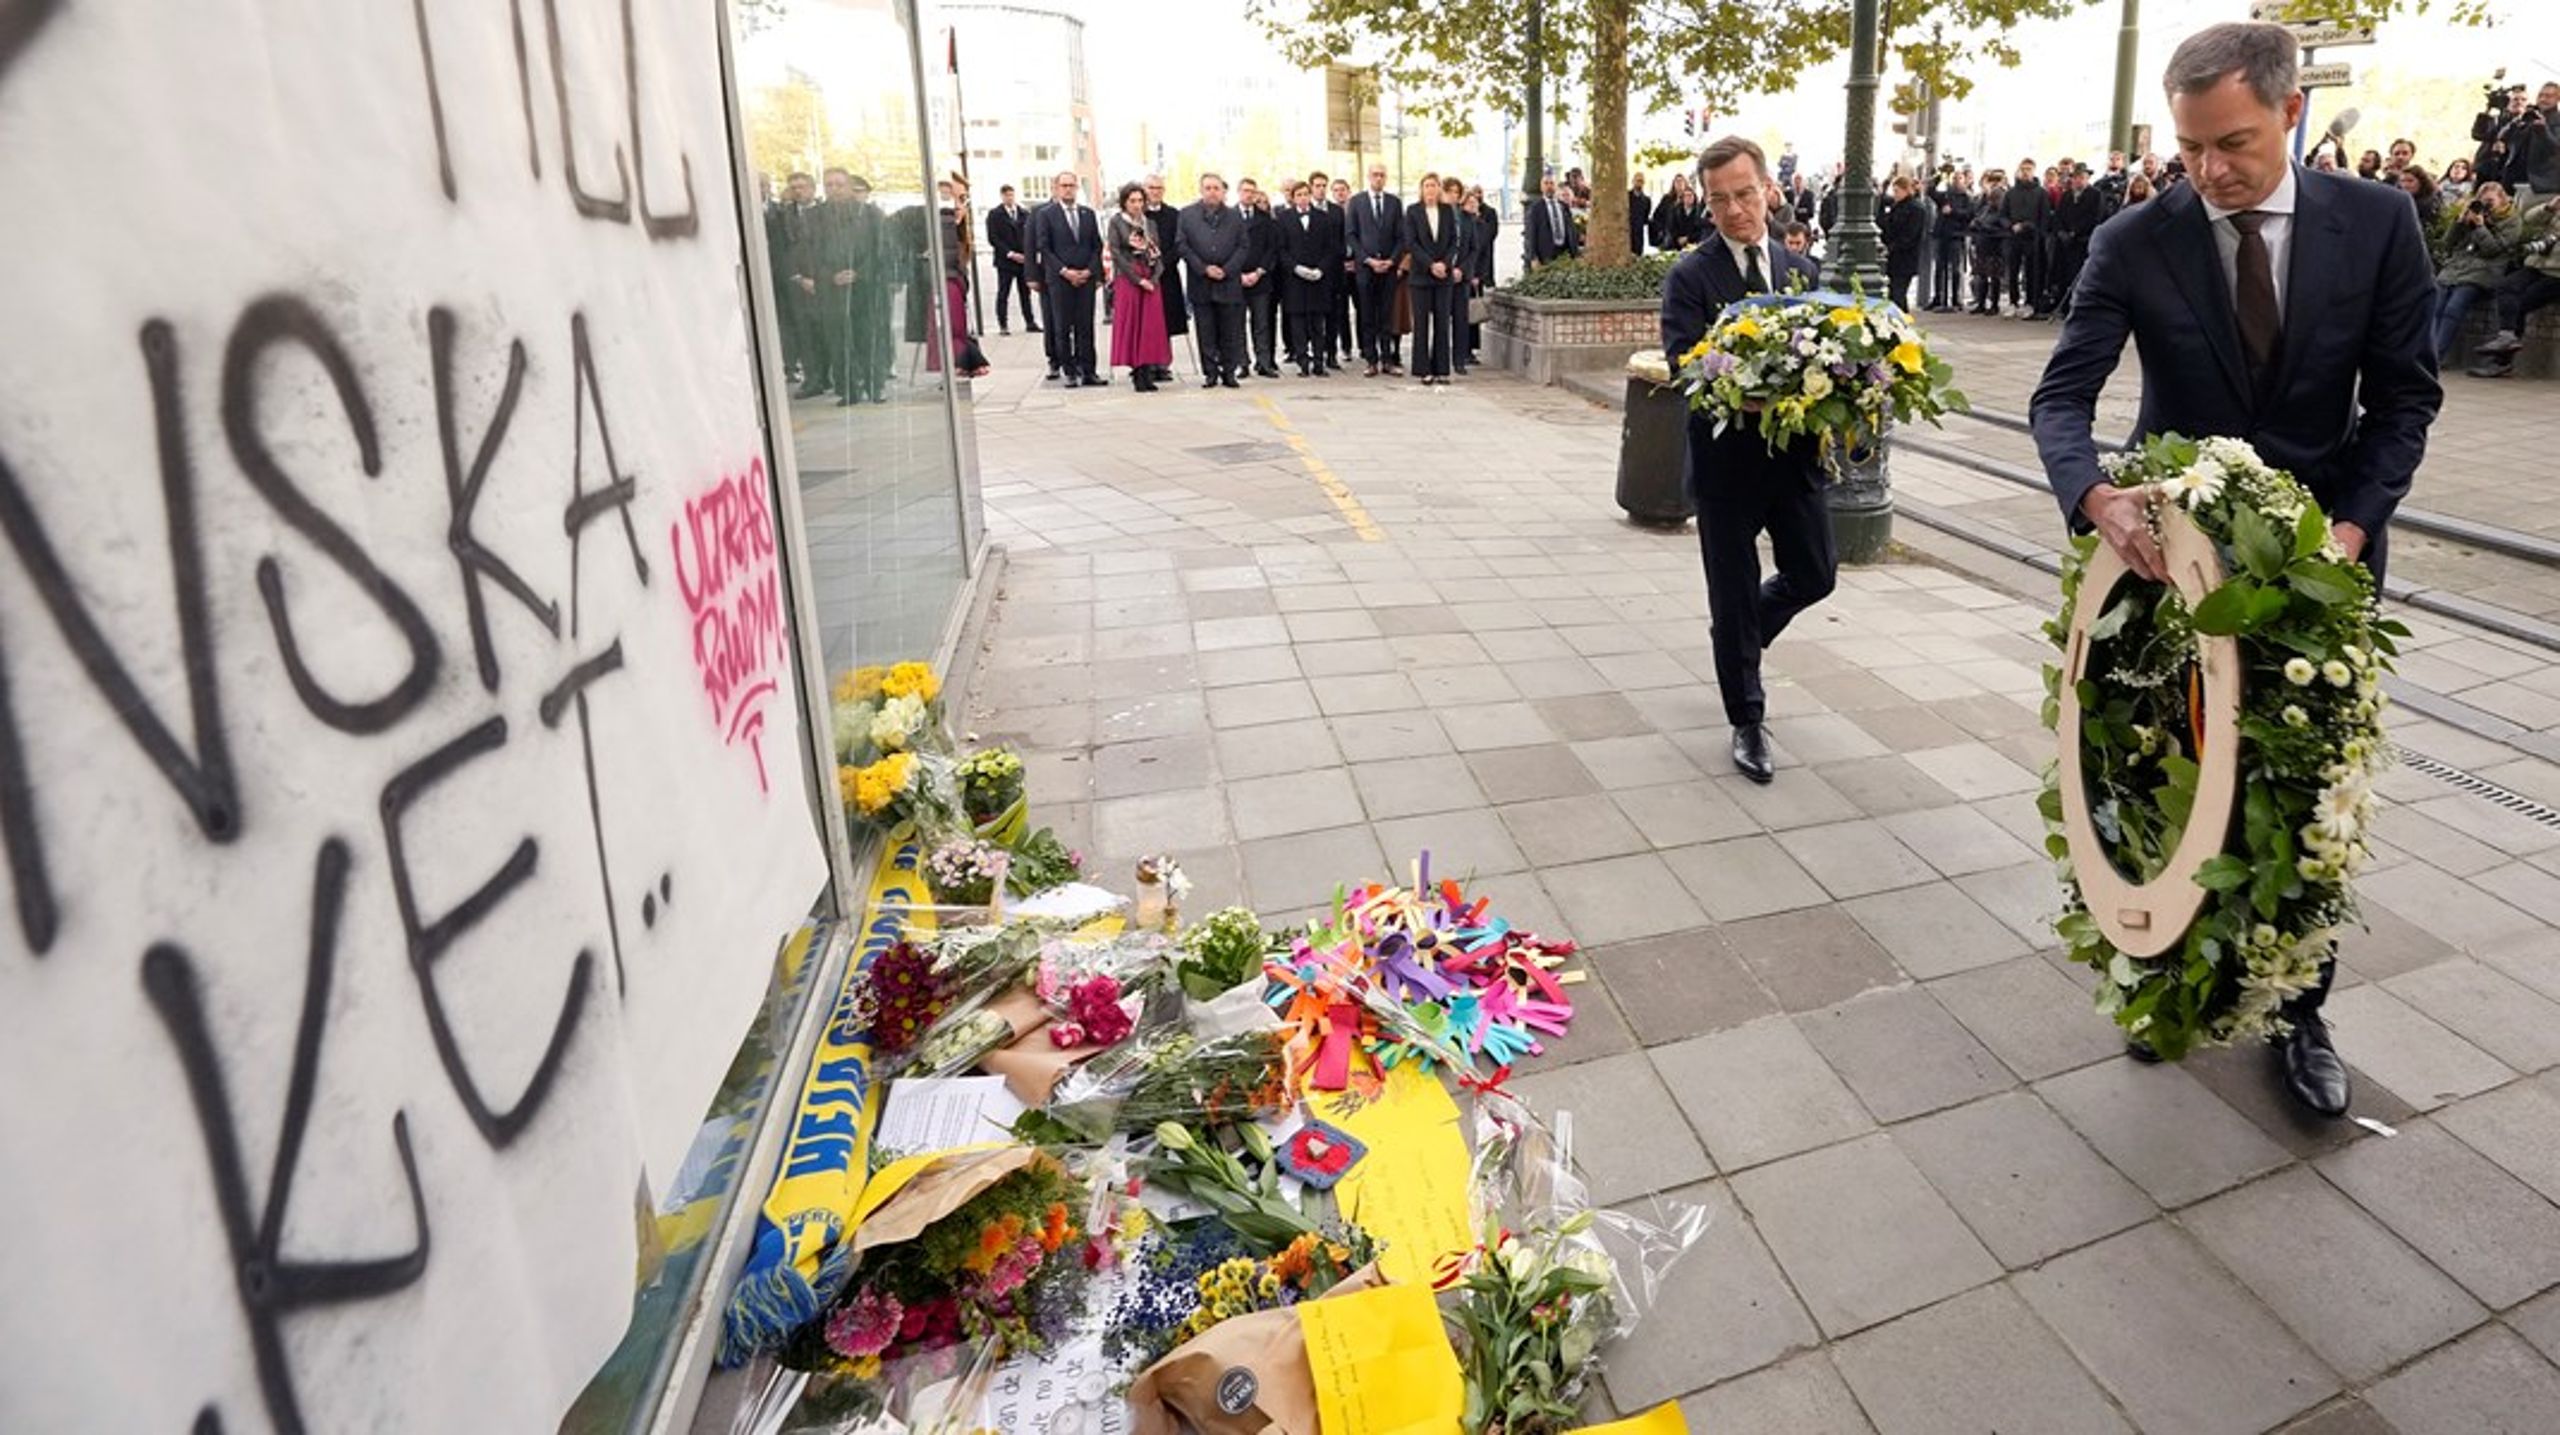 Statsminister Ulf Kristersson och Belgiens premiärminister Alexander De Croo lade vid en minnesceremoni&nbsp;på onsdagen&nbsp;ner kransar på den plats där två svenskar sköts till döds i måndagens terrorattack i Bryssel.&nbsp;